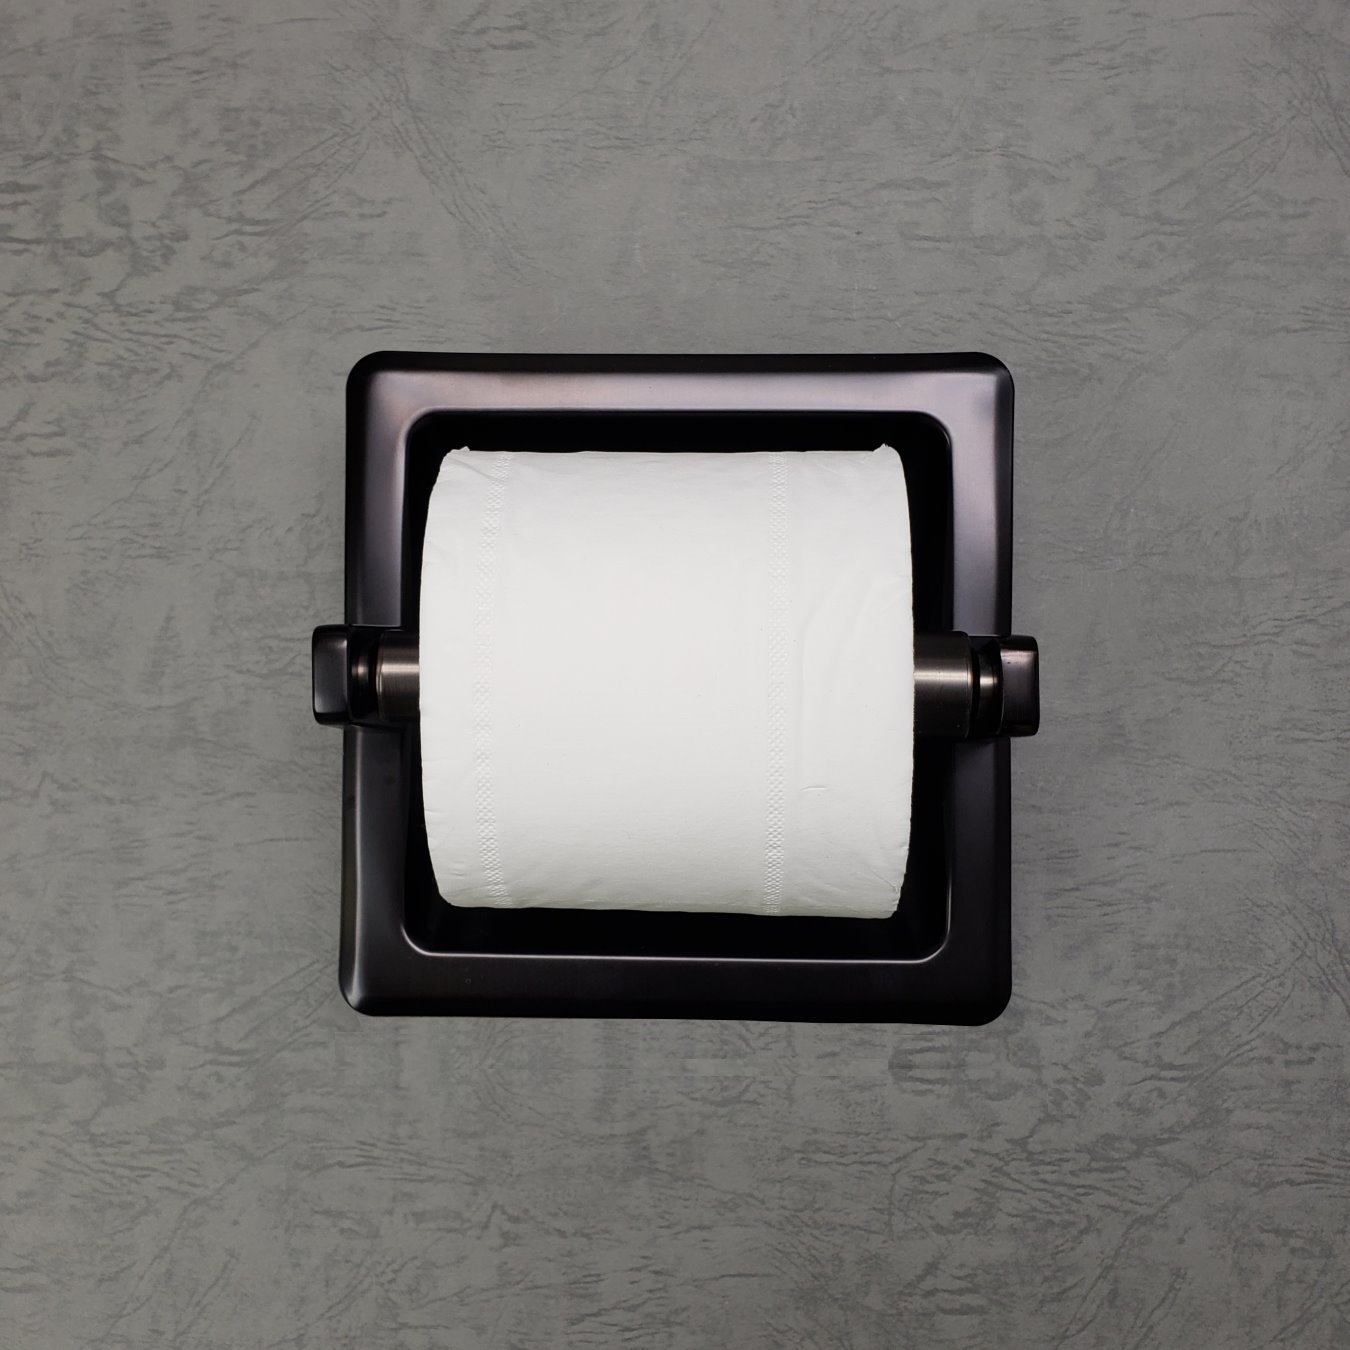 Black Ceramic Recessed Toilet Paper Holder - 6 1/2 x 6 1/2 x 3 1/4